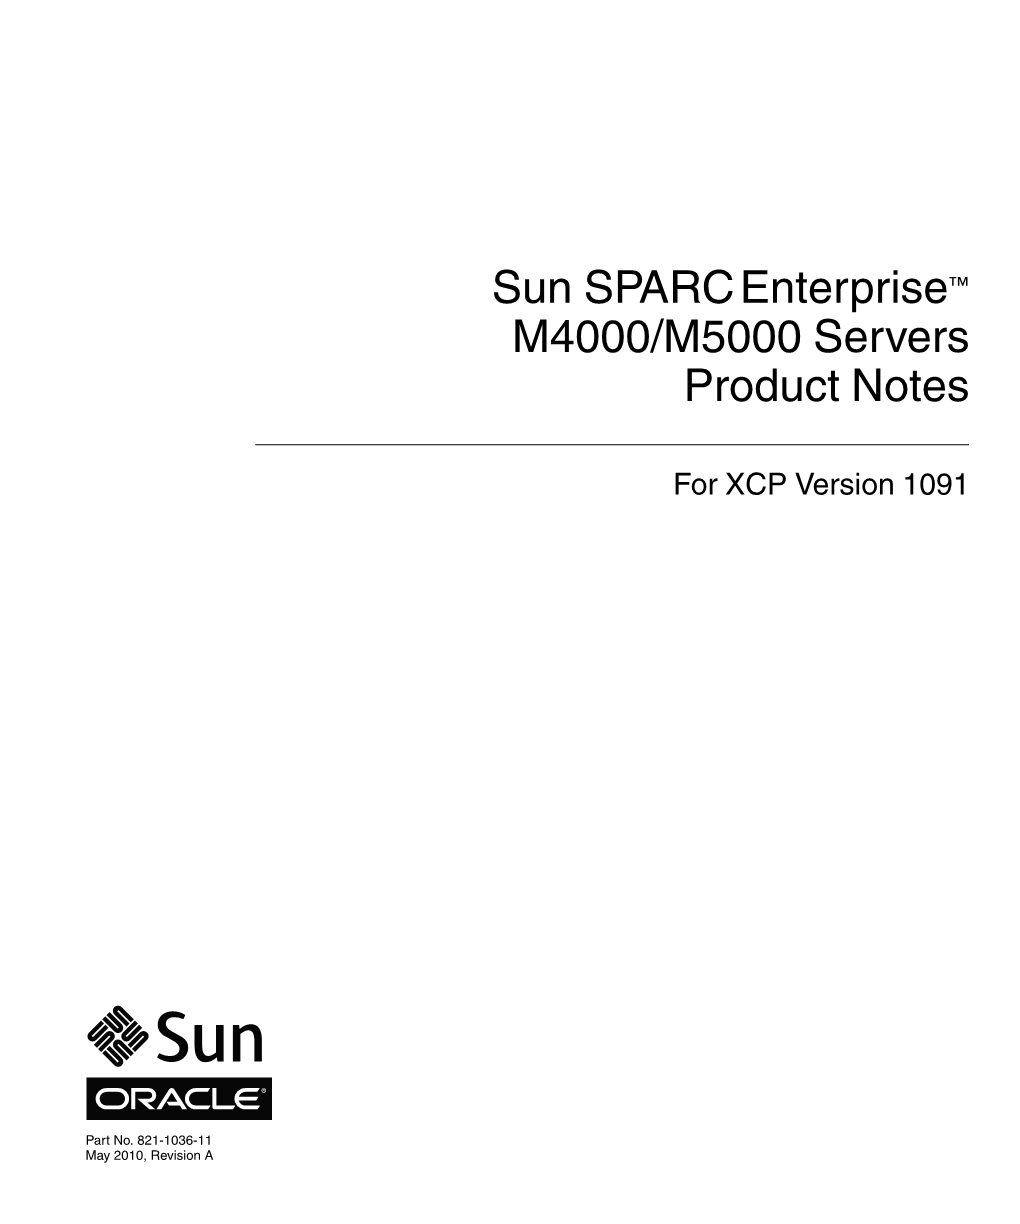 Sun SPARC Enterprise M4000/M5000 Servers Product